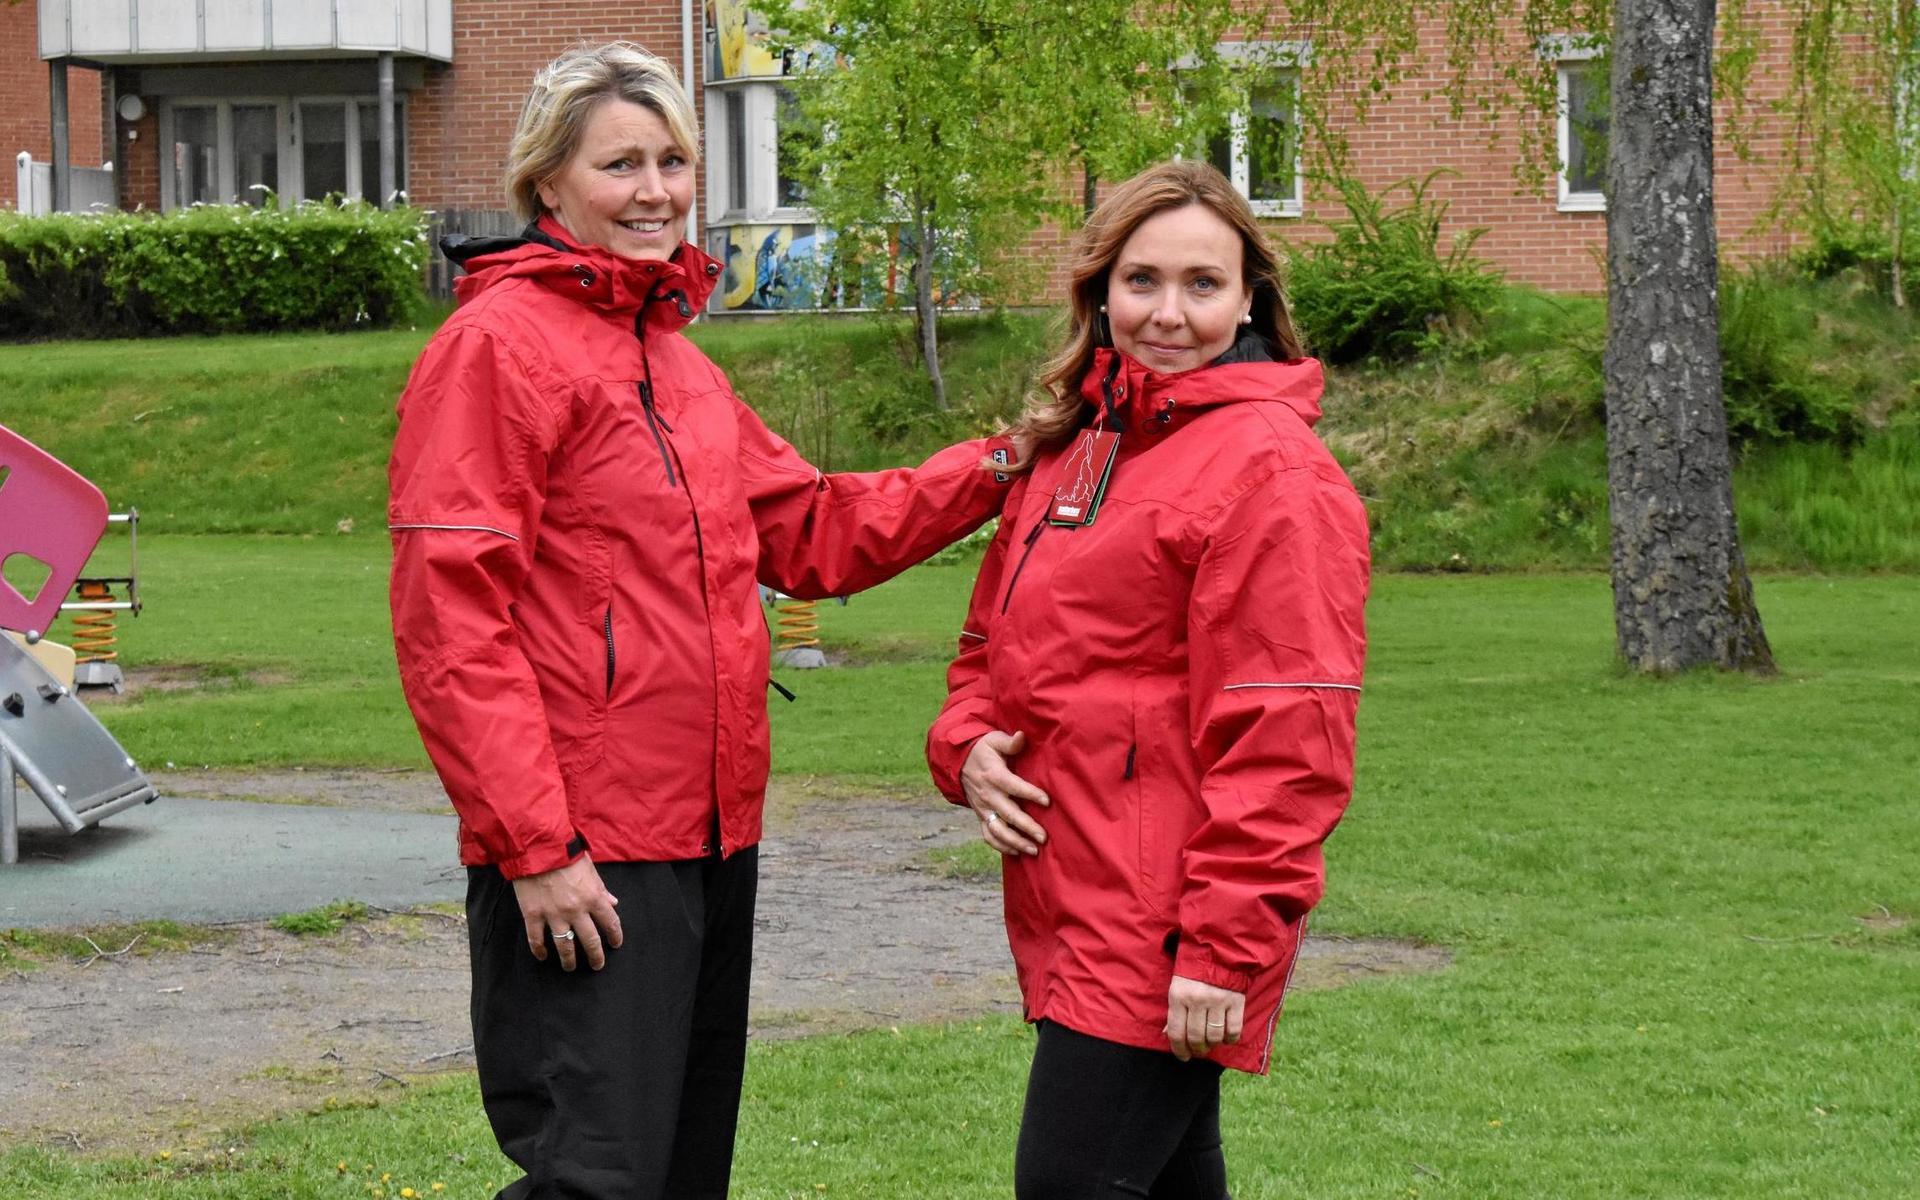 Therese Svensson och Agneta Johansson anställda inom barnomsorgen i Hylte, testar provkollektionen av arbetskläder.